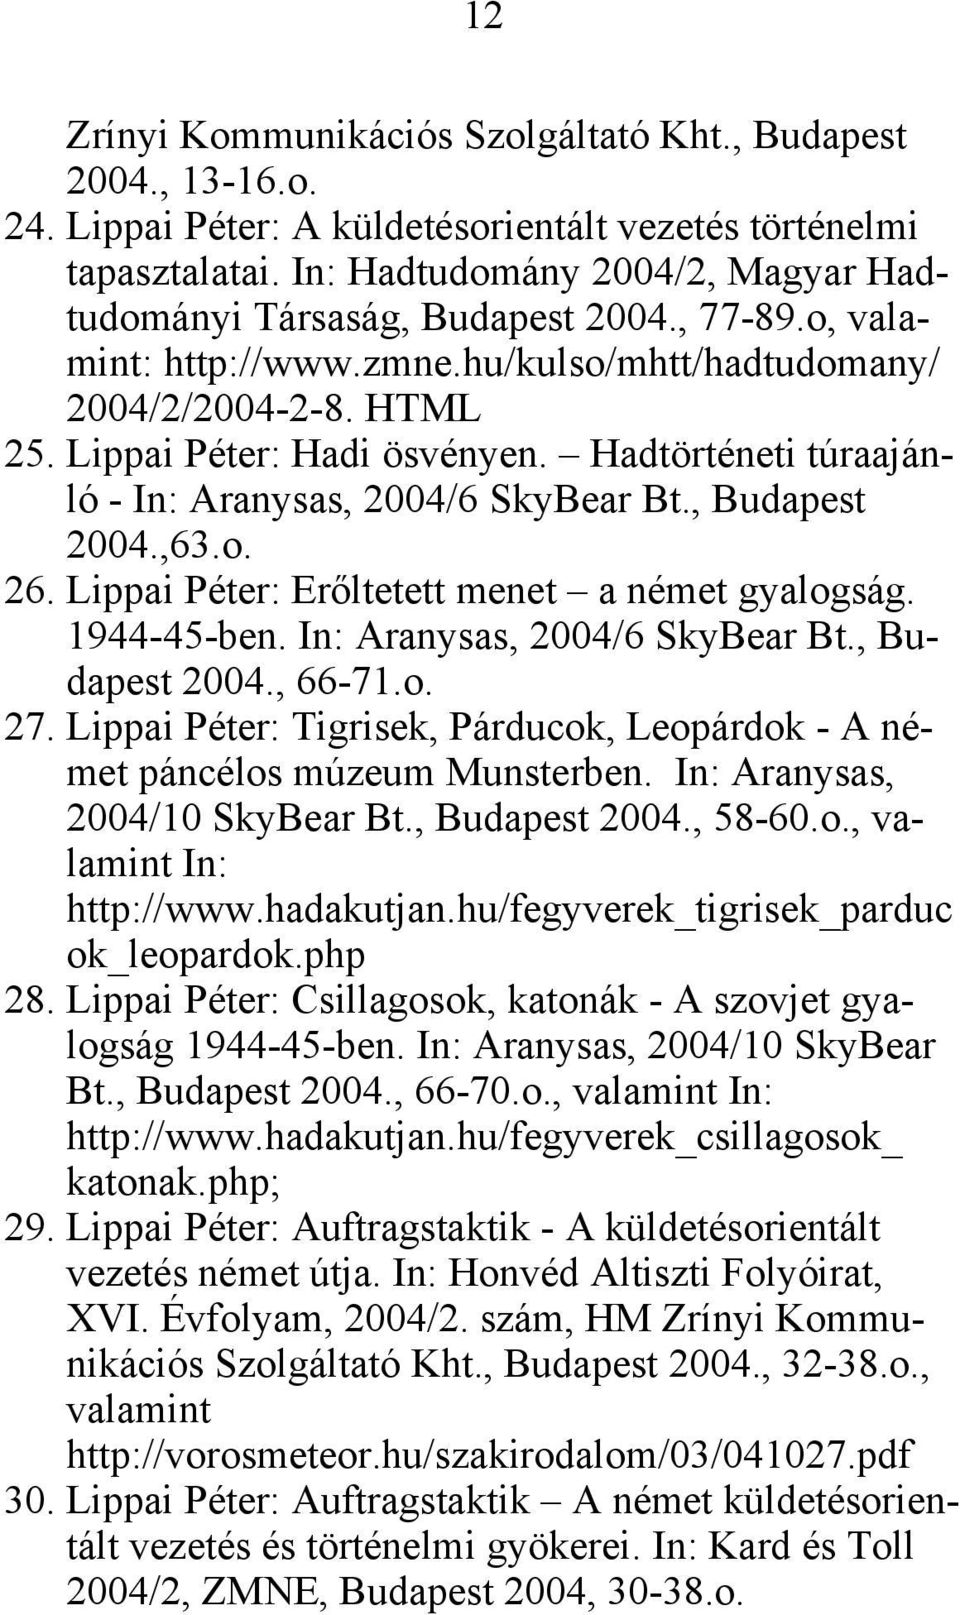 Hadtörténeti túraajánló - In: Aranysas, 2004/6 SkyBear Bt., Budapest 2004.,63.o. 26. Lippai Péter: Erőltetett menet a német gyalogság. 1944-45-ben. In: Aranysas, 2004/6 SkyBear Bt., Budapest 2004., 66-71.